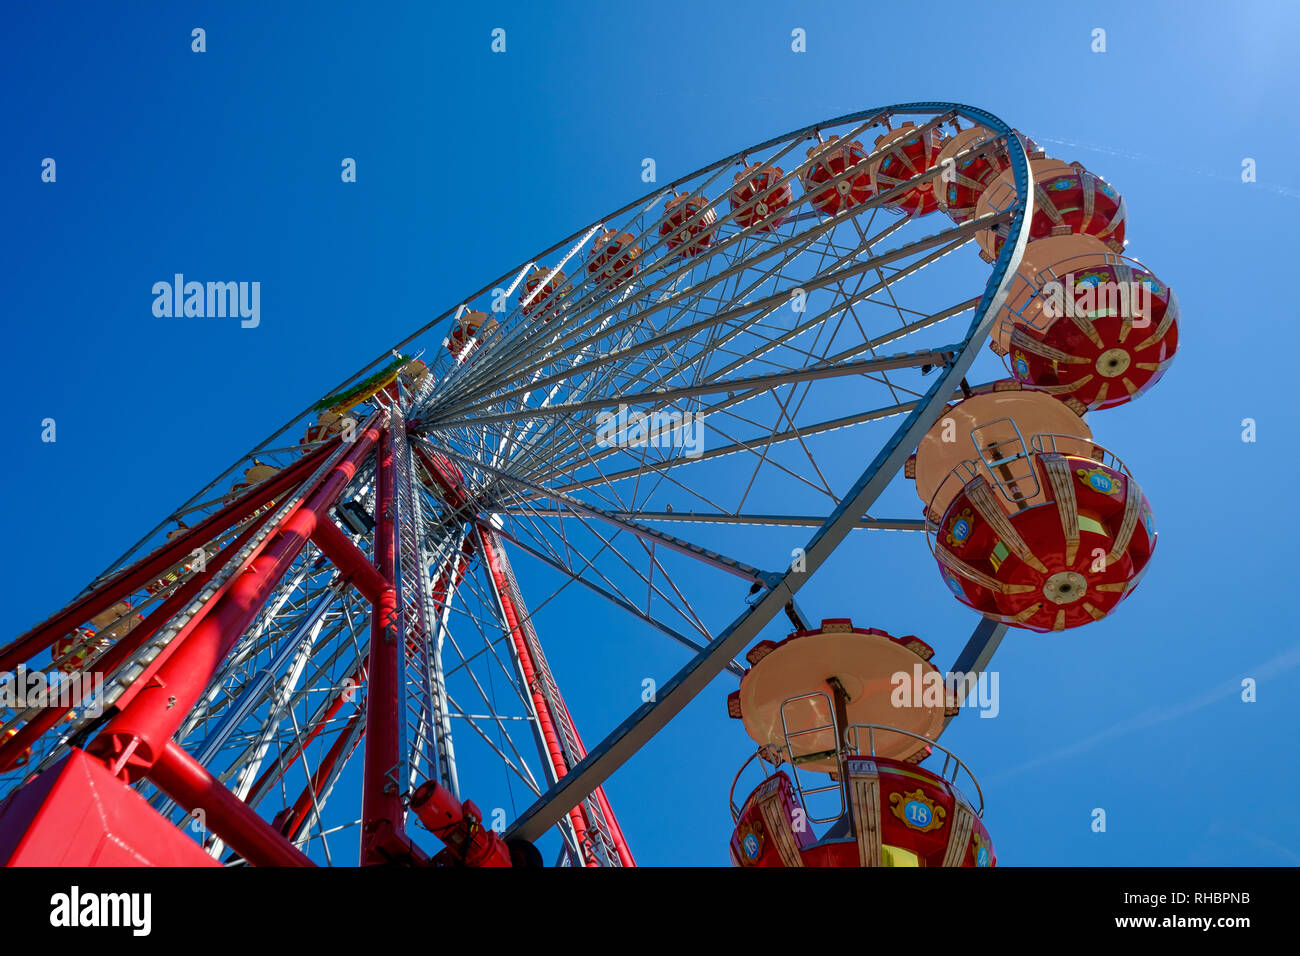 Ferris wheel in the Zurich Stock Photo